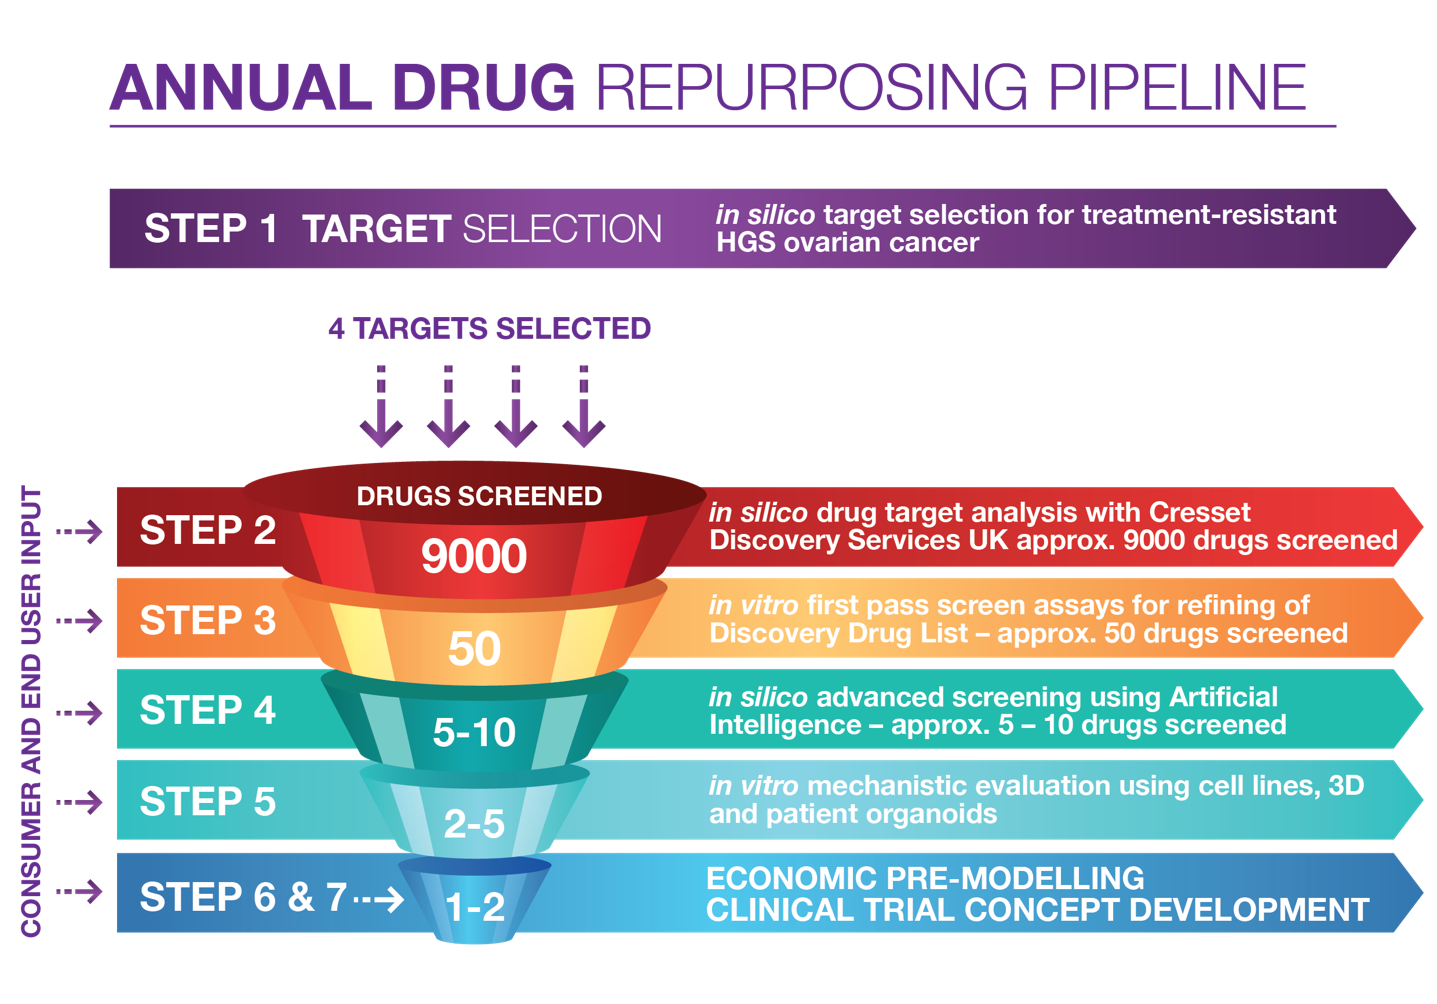 Figure 1. The Australian Program for Drug Repurposing for Treatment Resistant Ovarian Cancer – annual drug repurposing pipeline